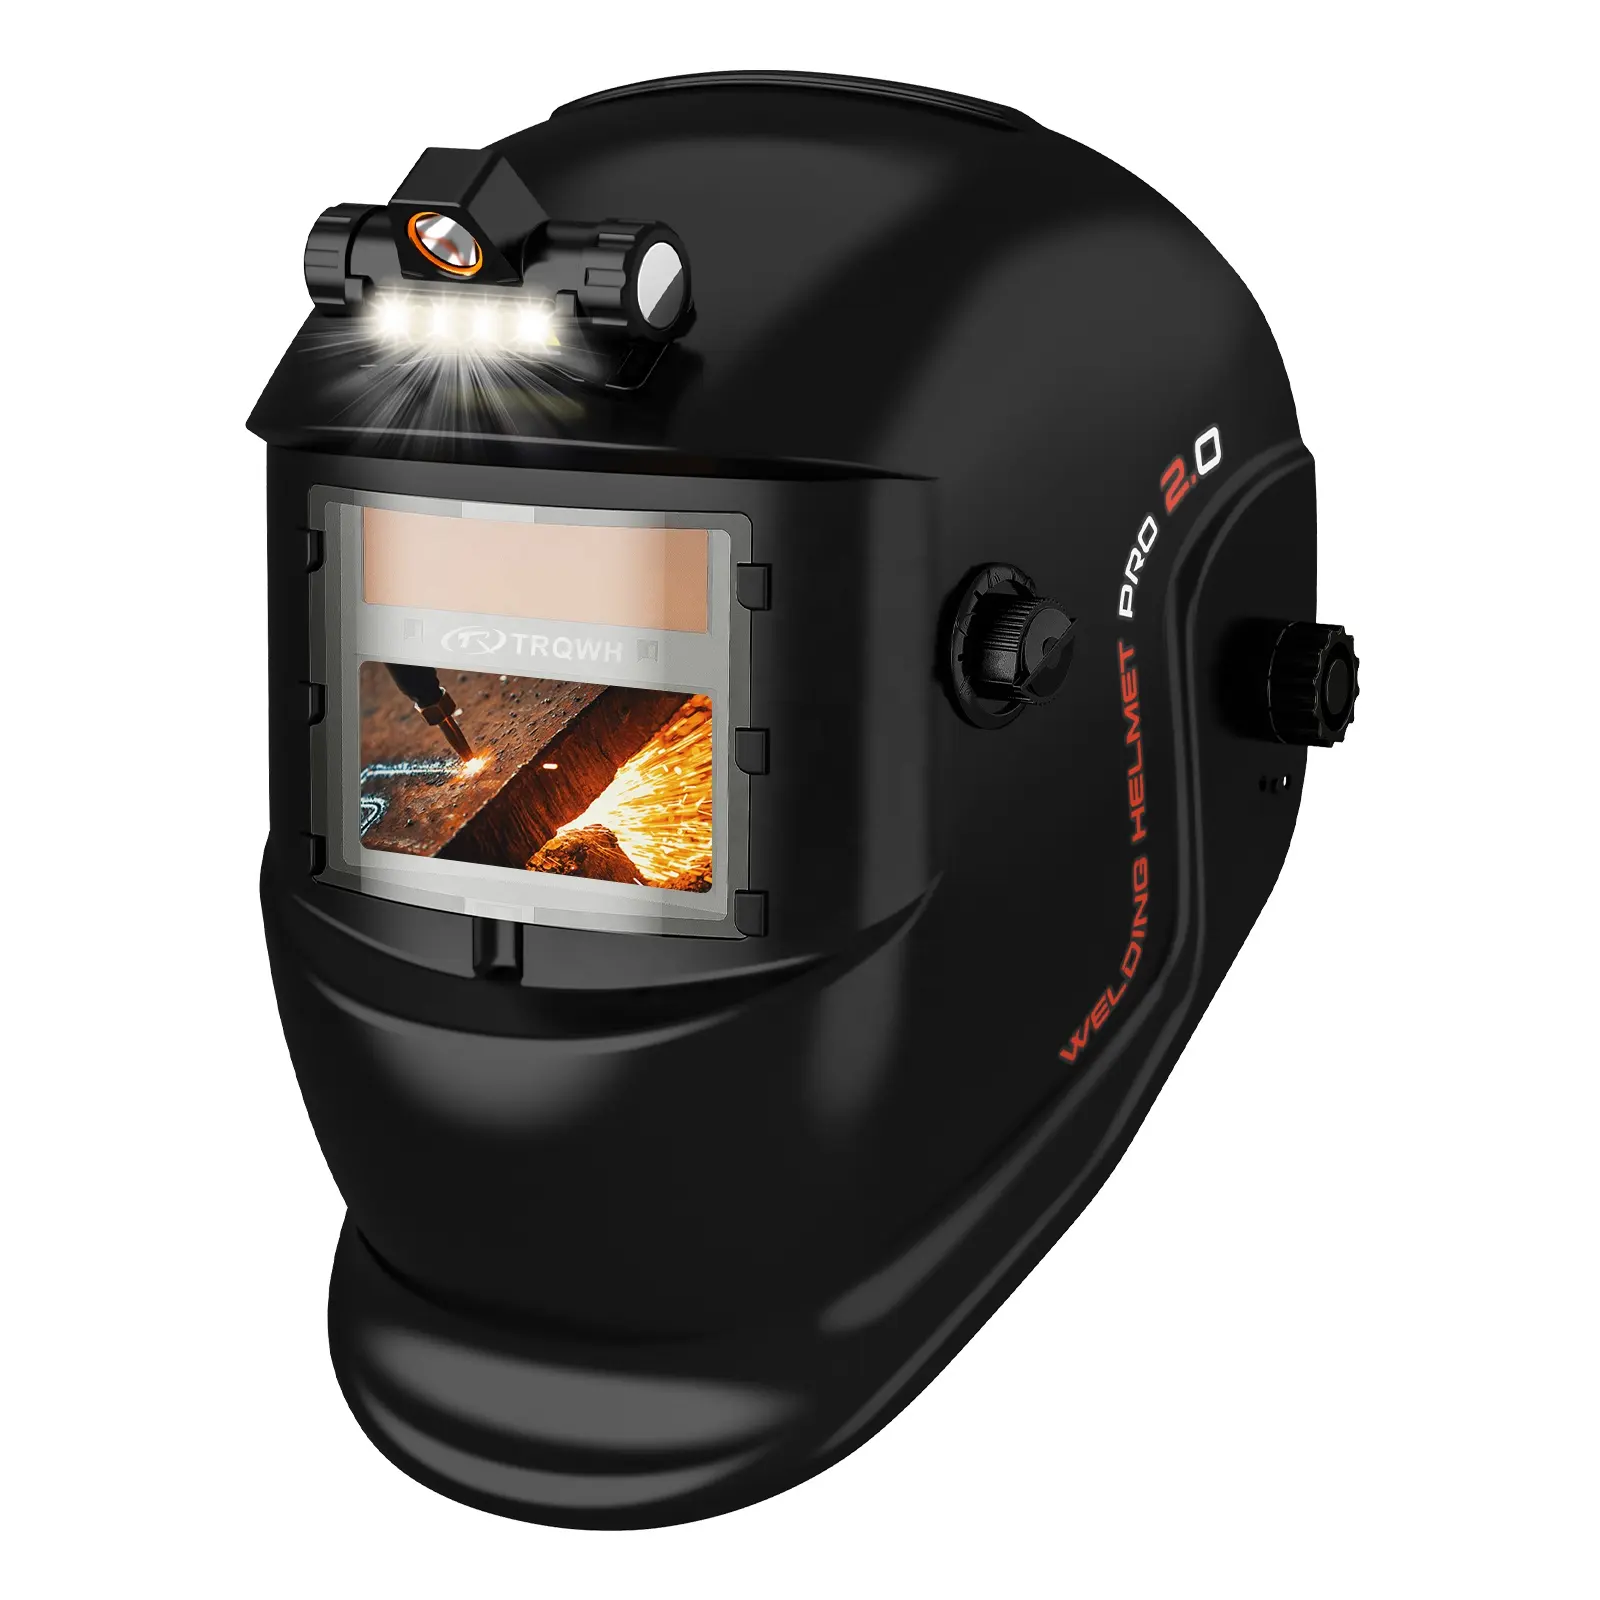 Le casque de soudage à gradation automatique TRQ TIG MIG peut être personnalisé phares LED pour casques de soudage qui fonctionnent dans des environnements sombres